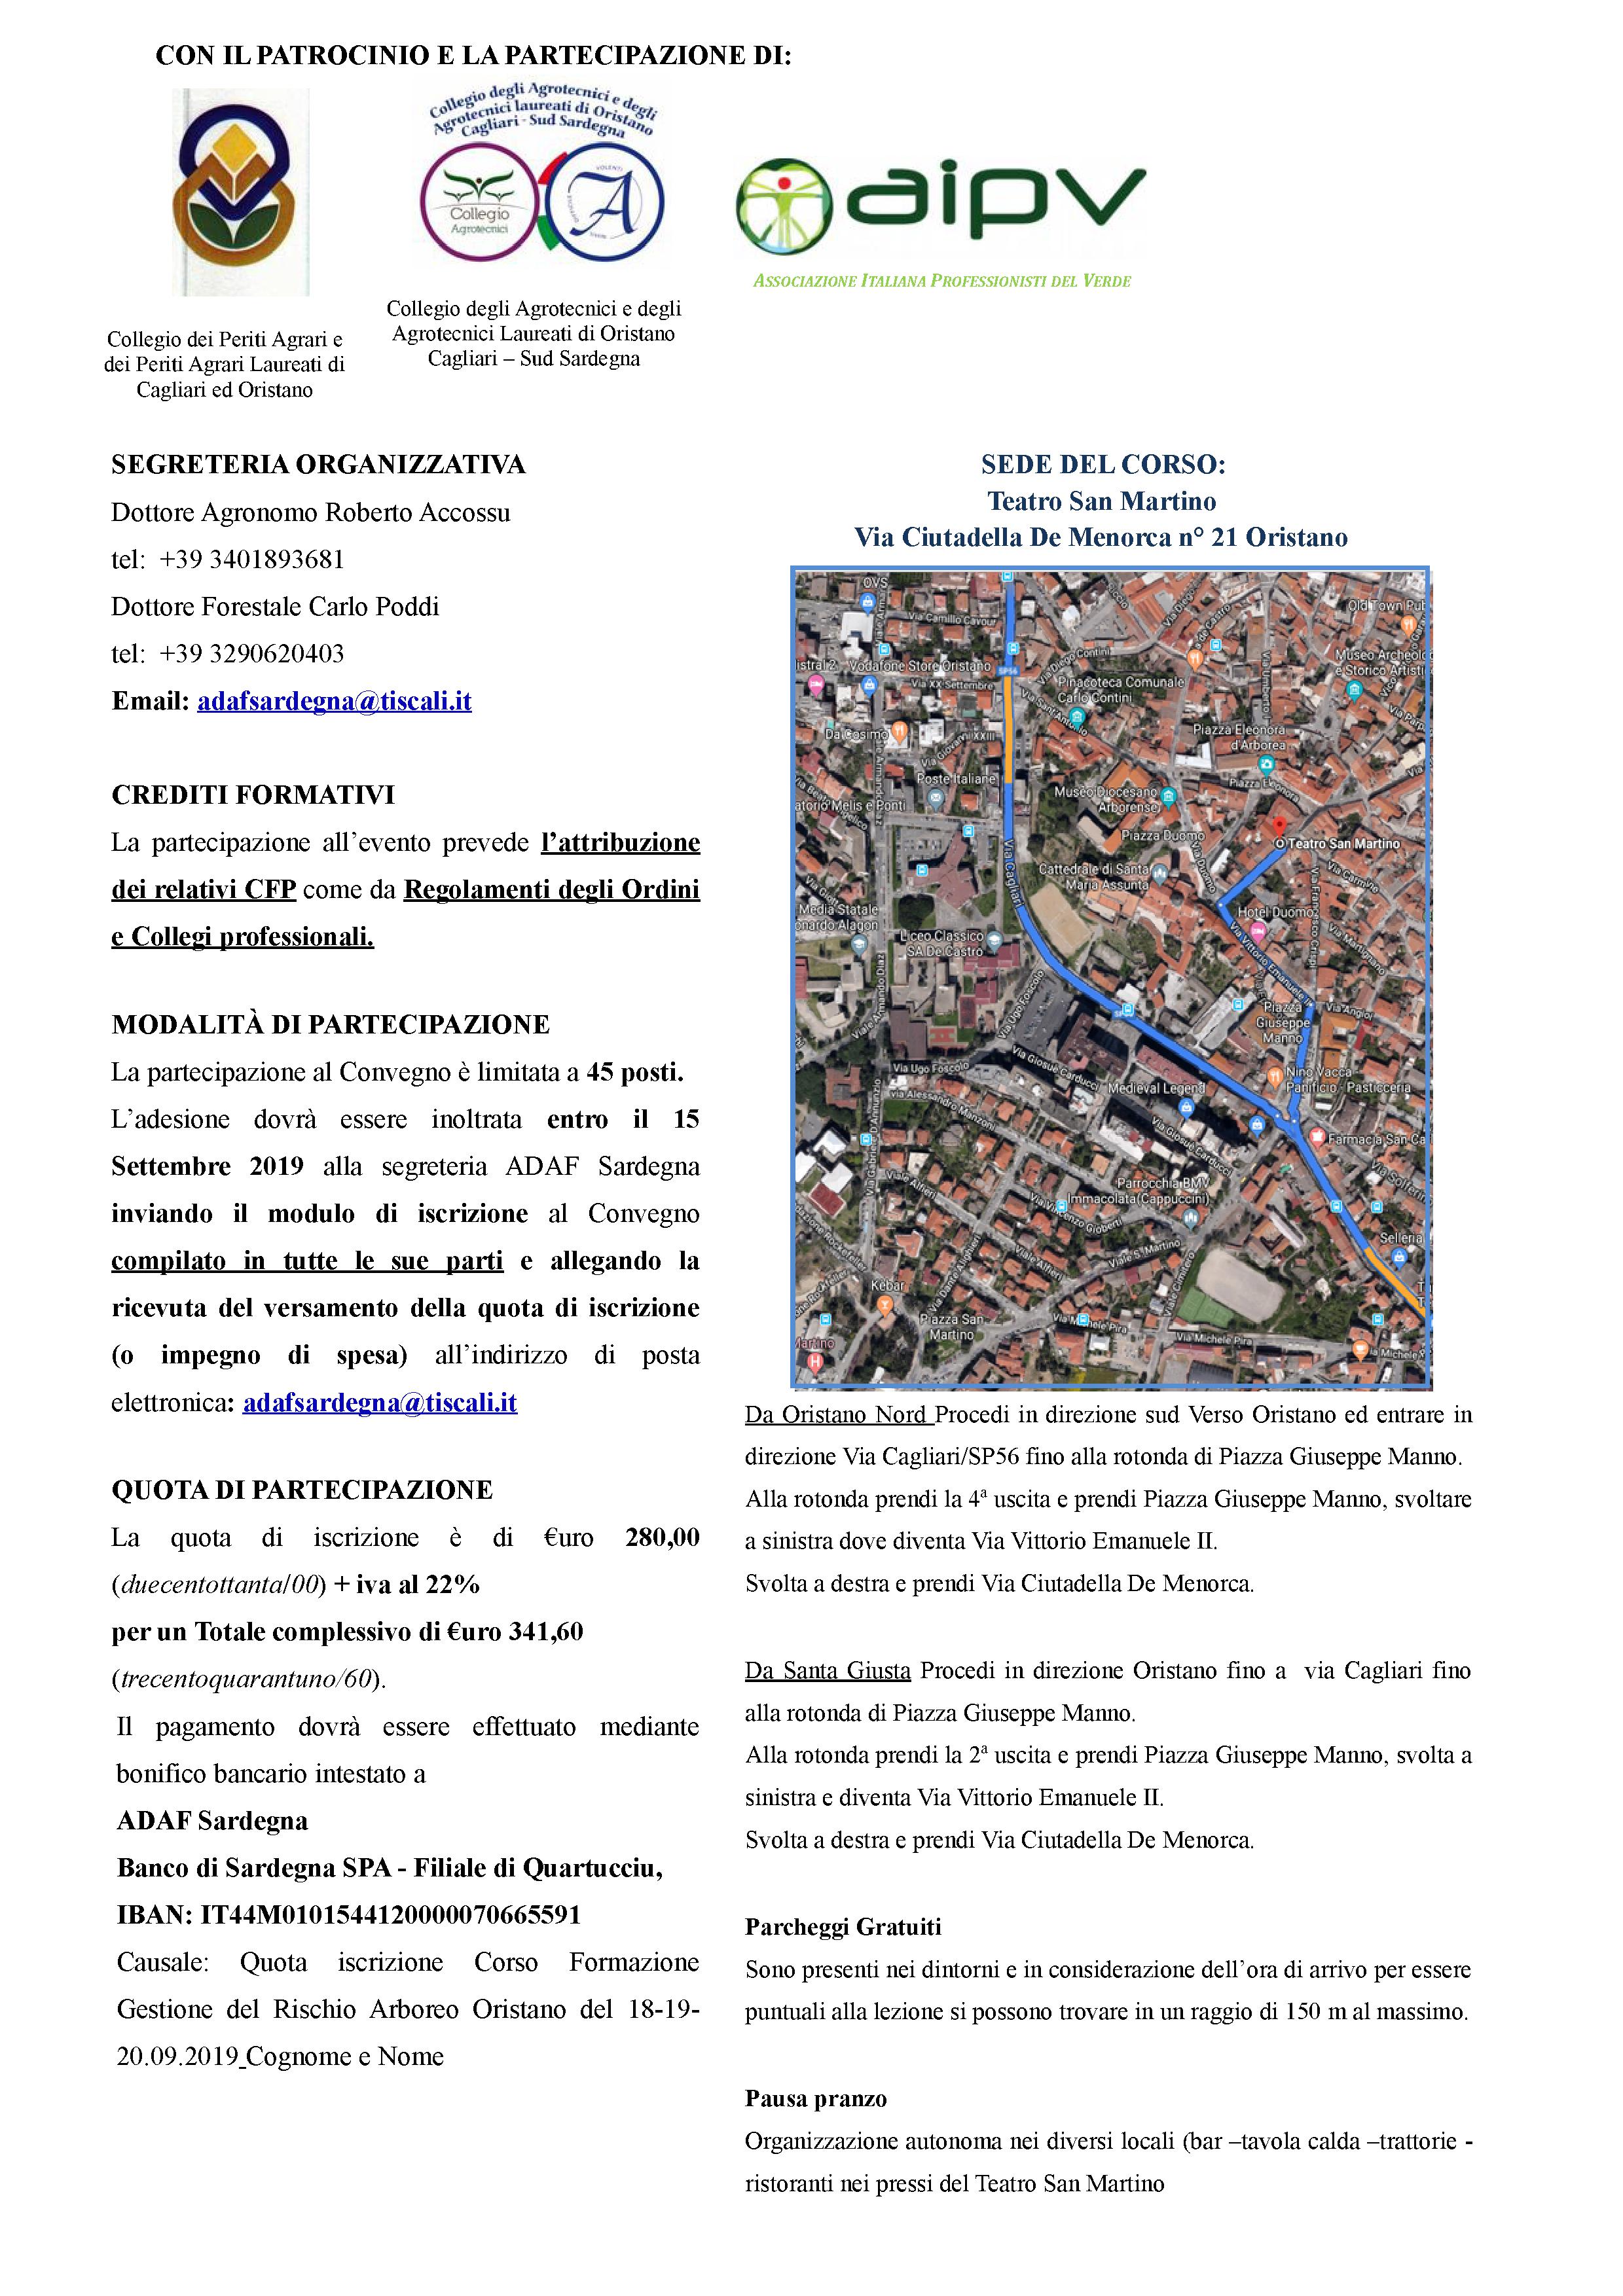 Brochure Corso Gestione Rischio Arboreo OR_19082019 1-2jpg